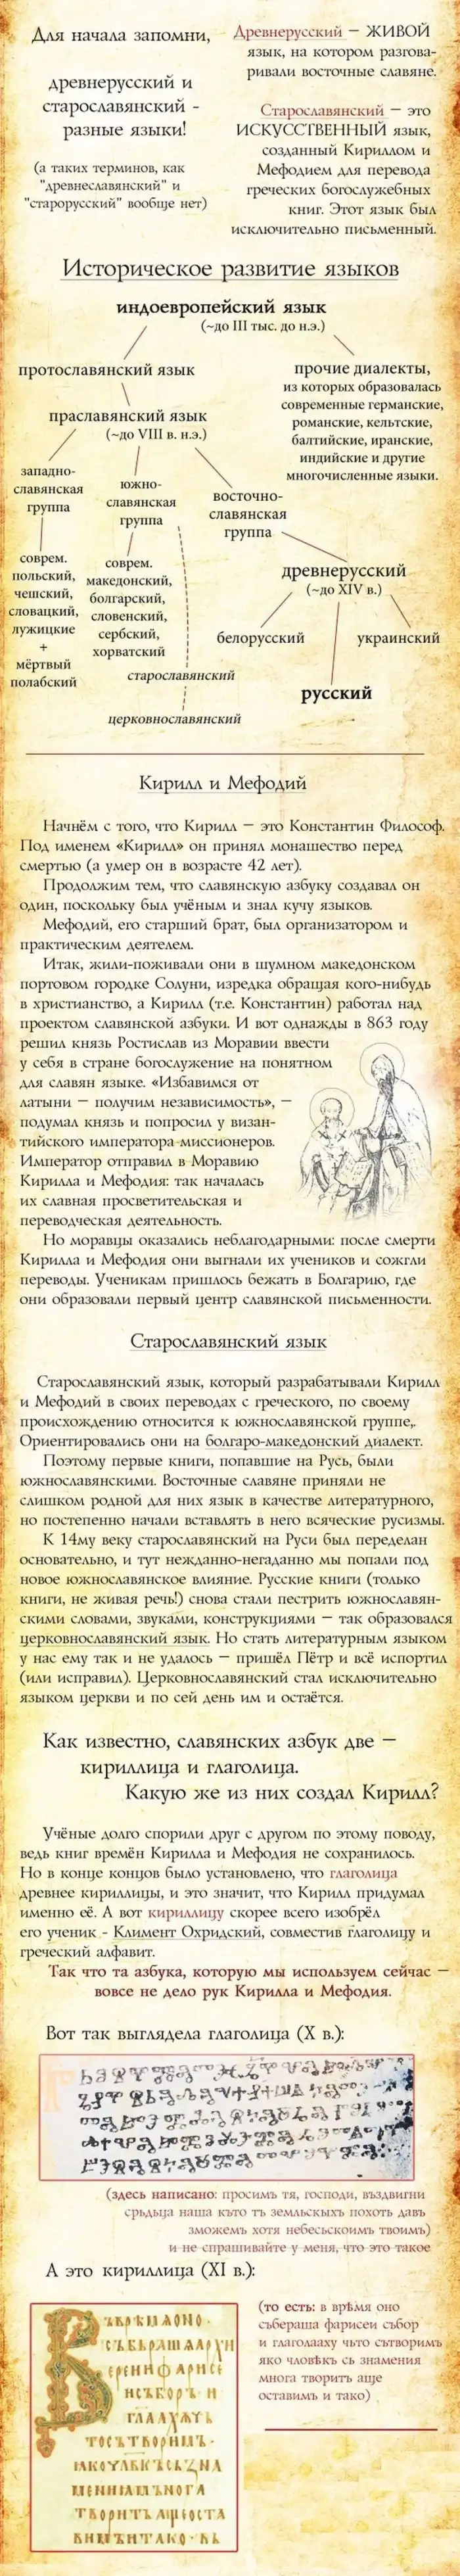 История могучего русского языка